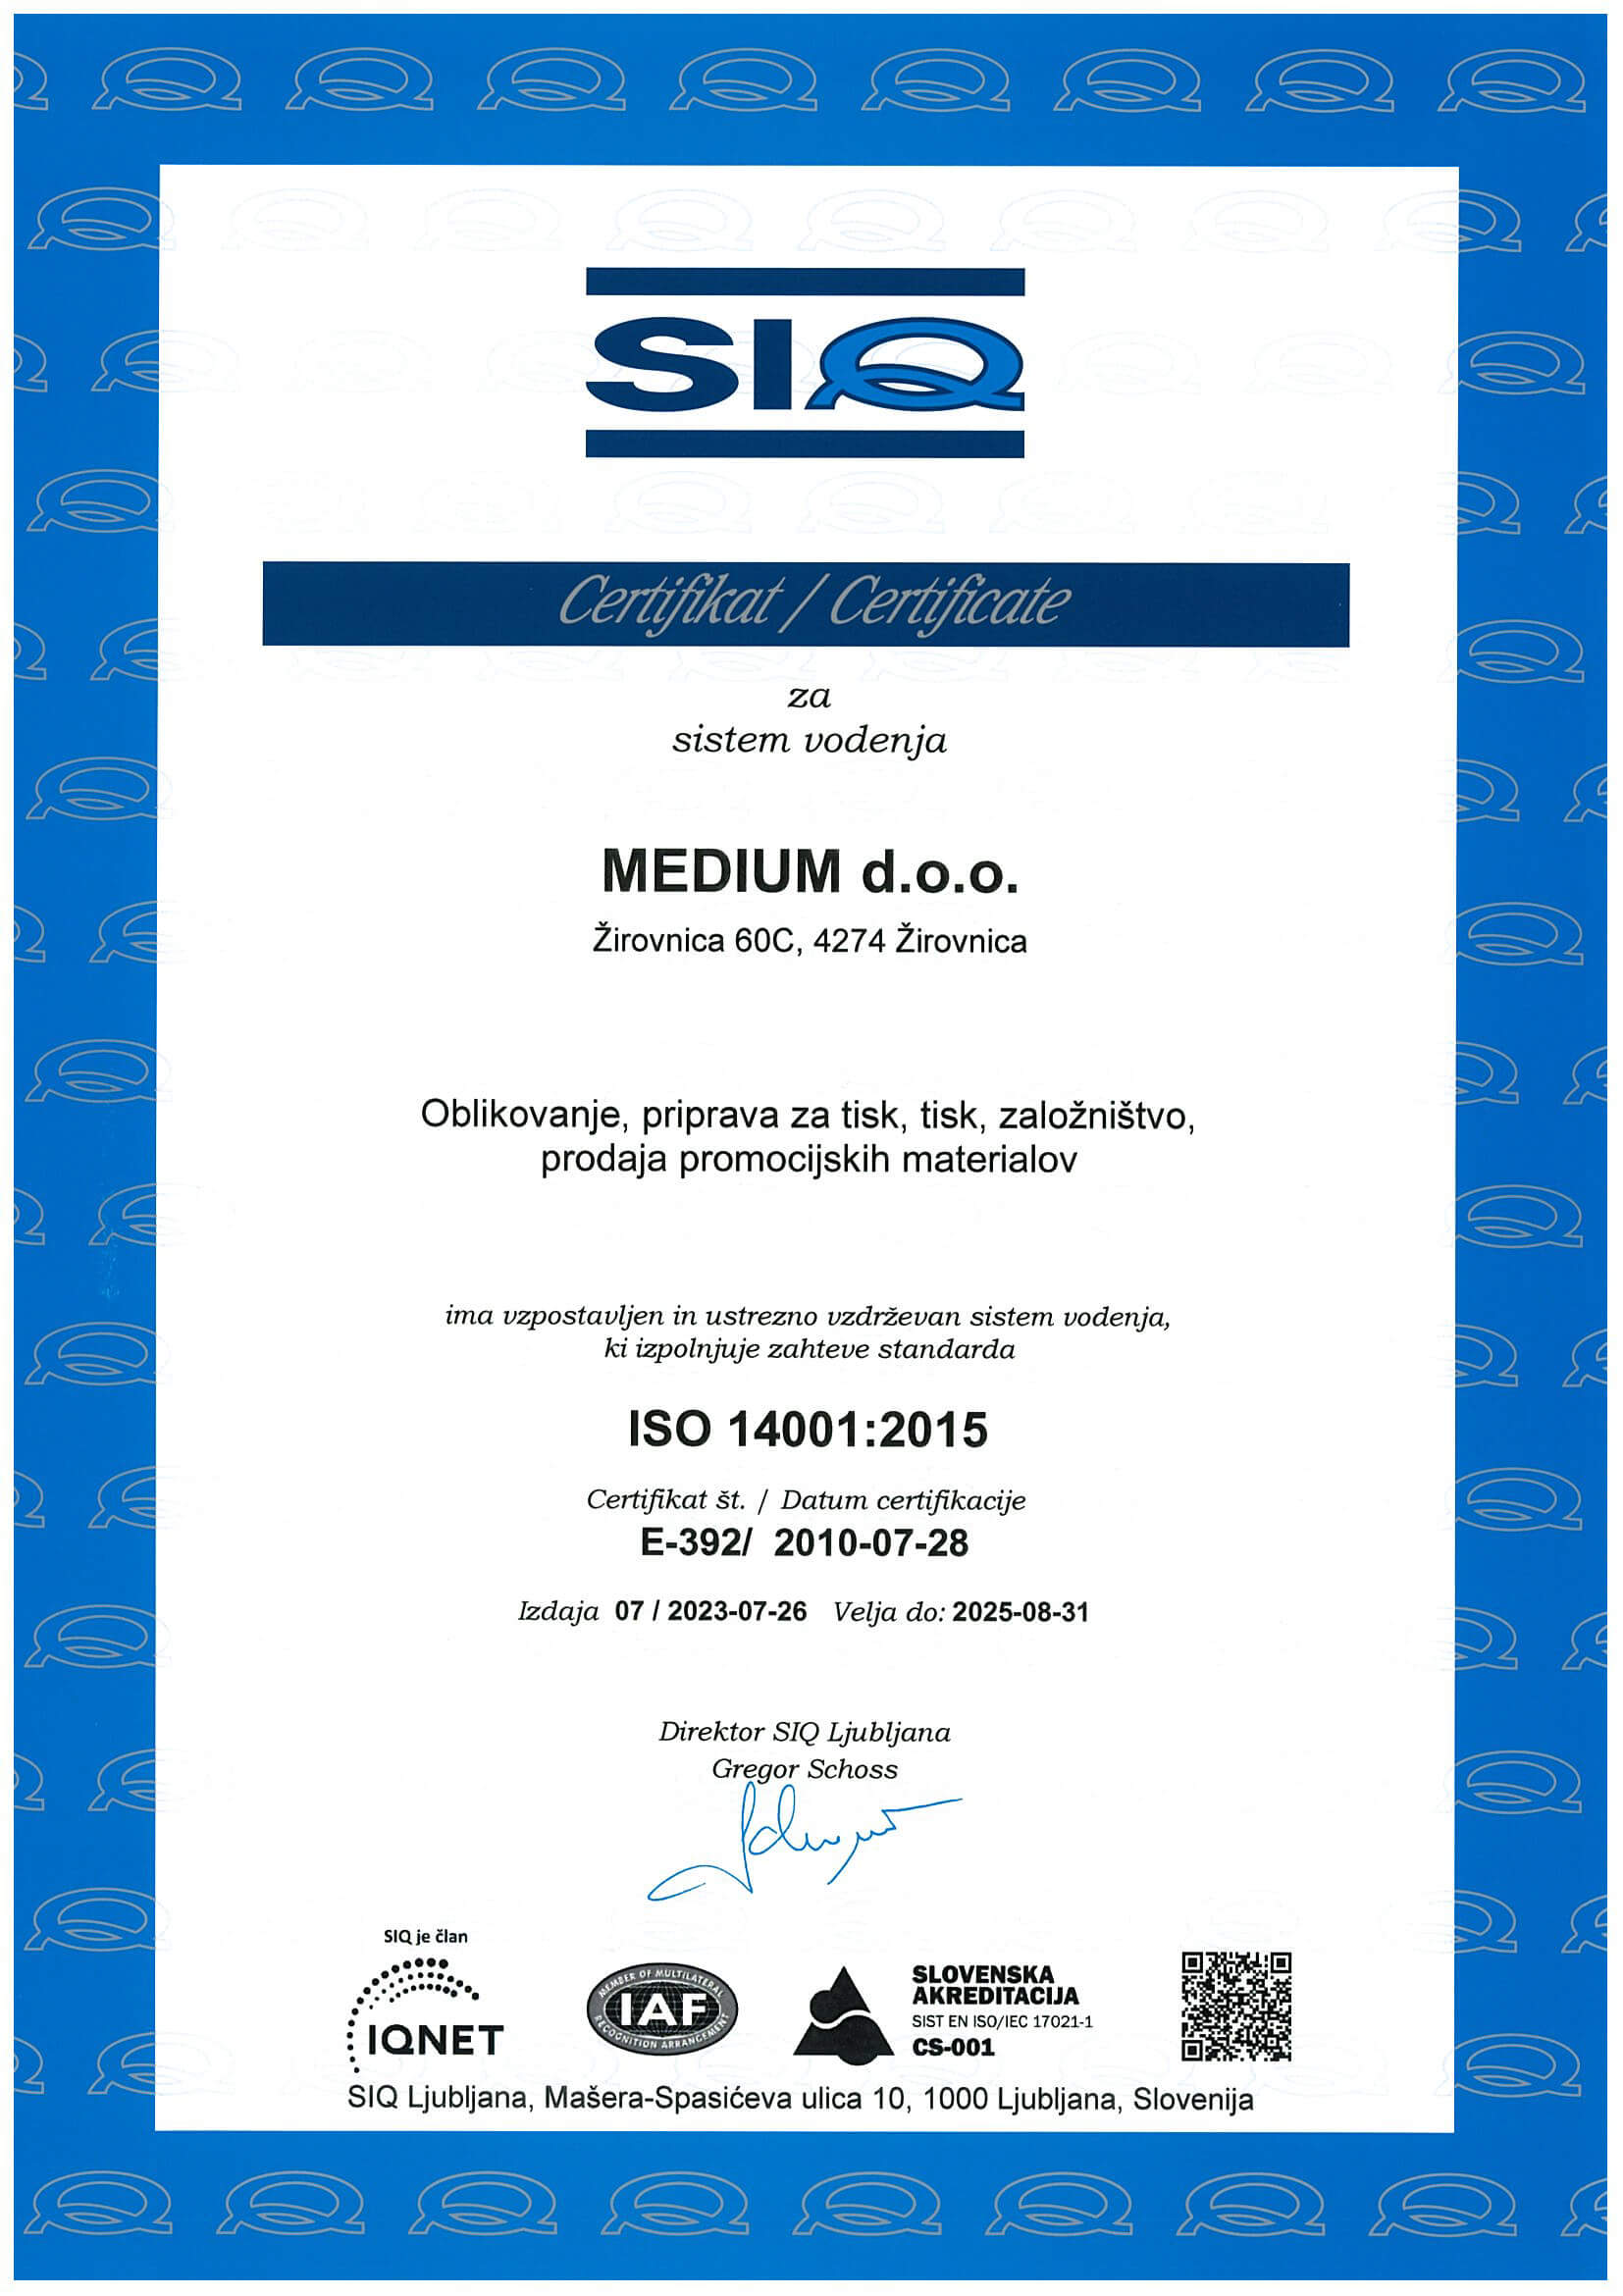 SIQ Certificate